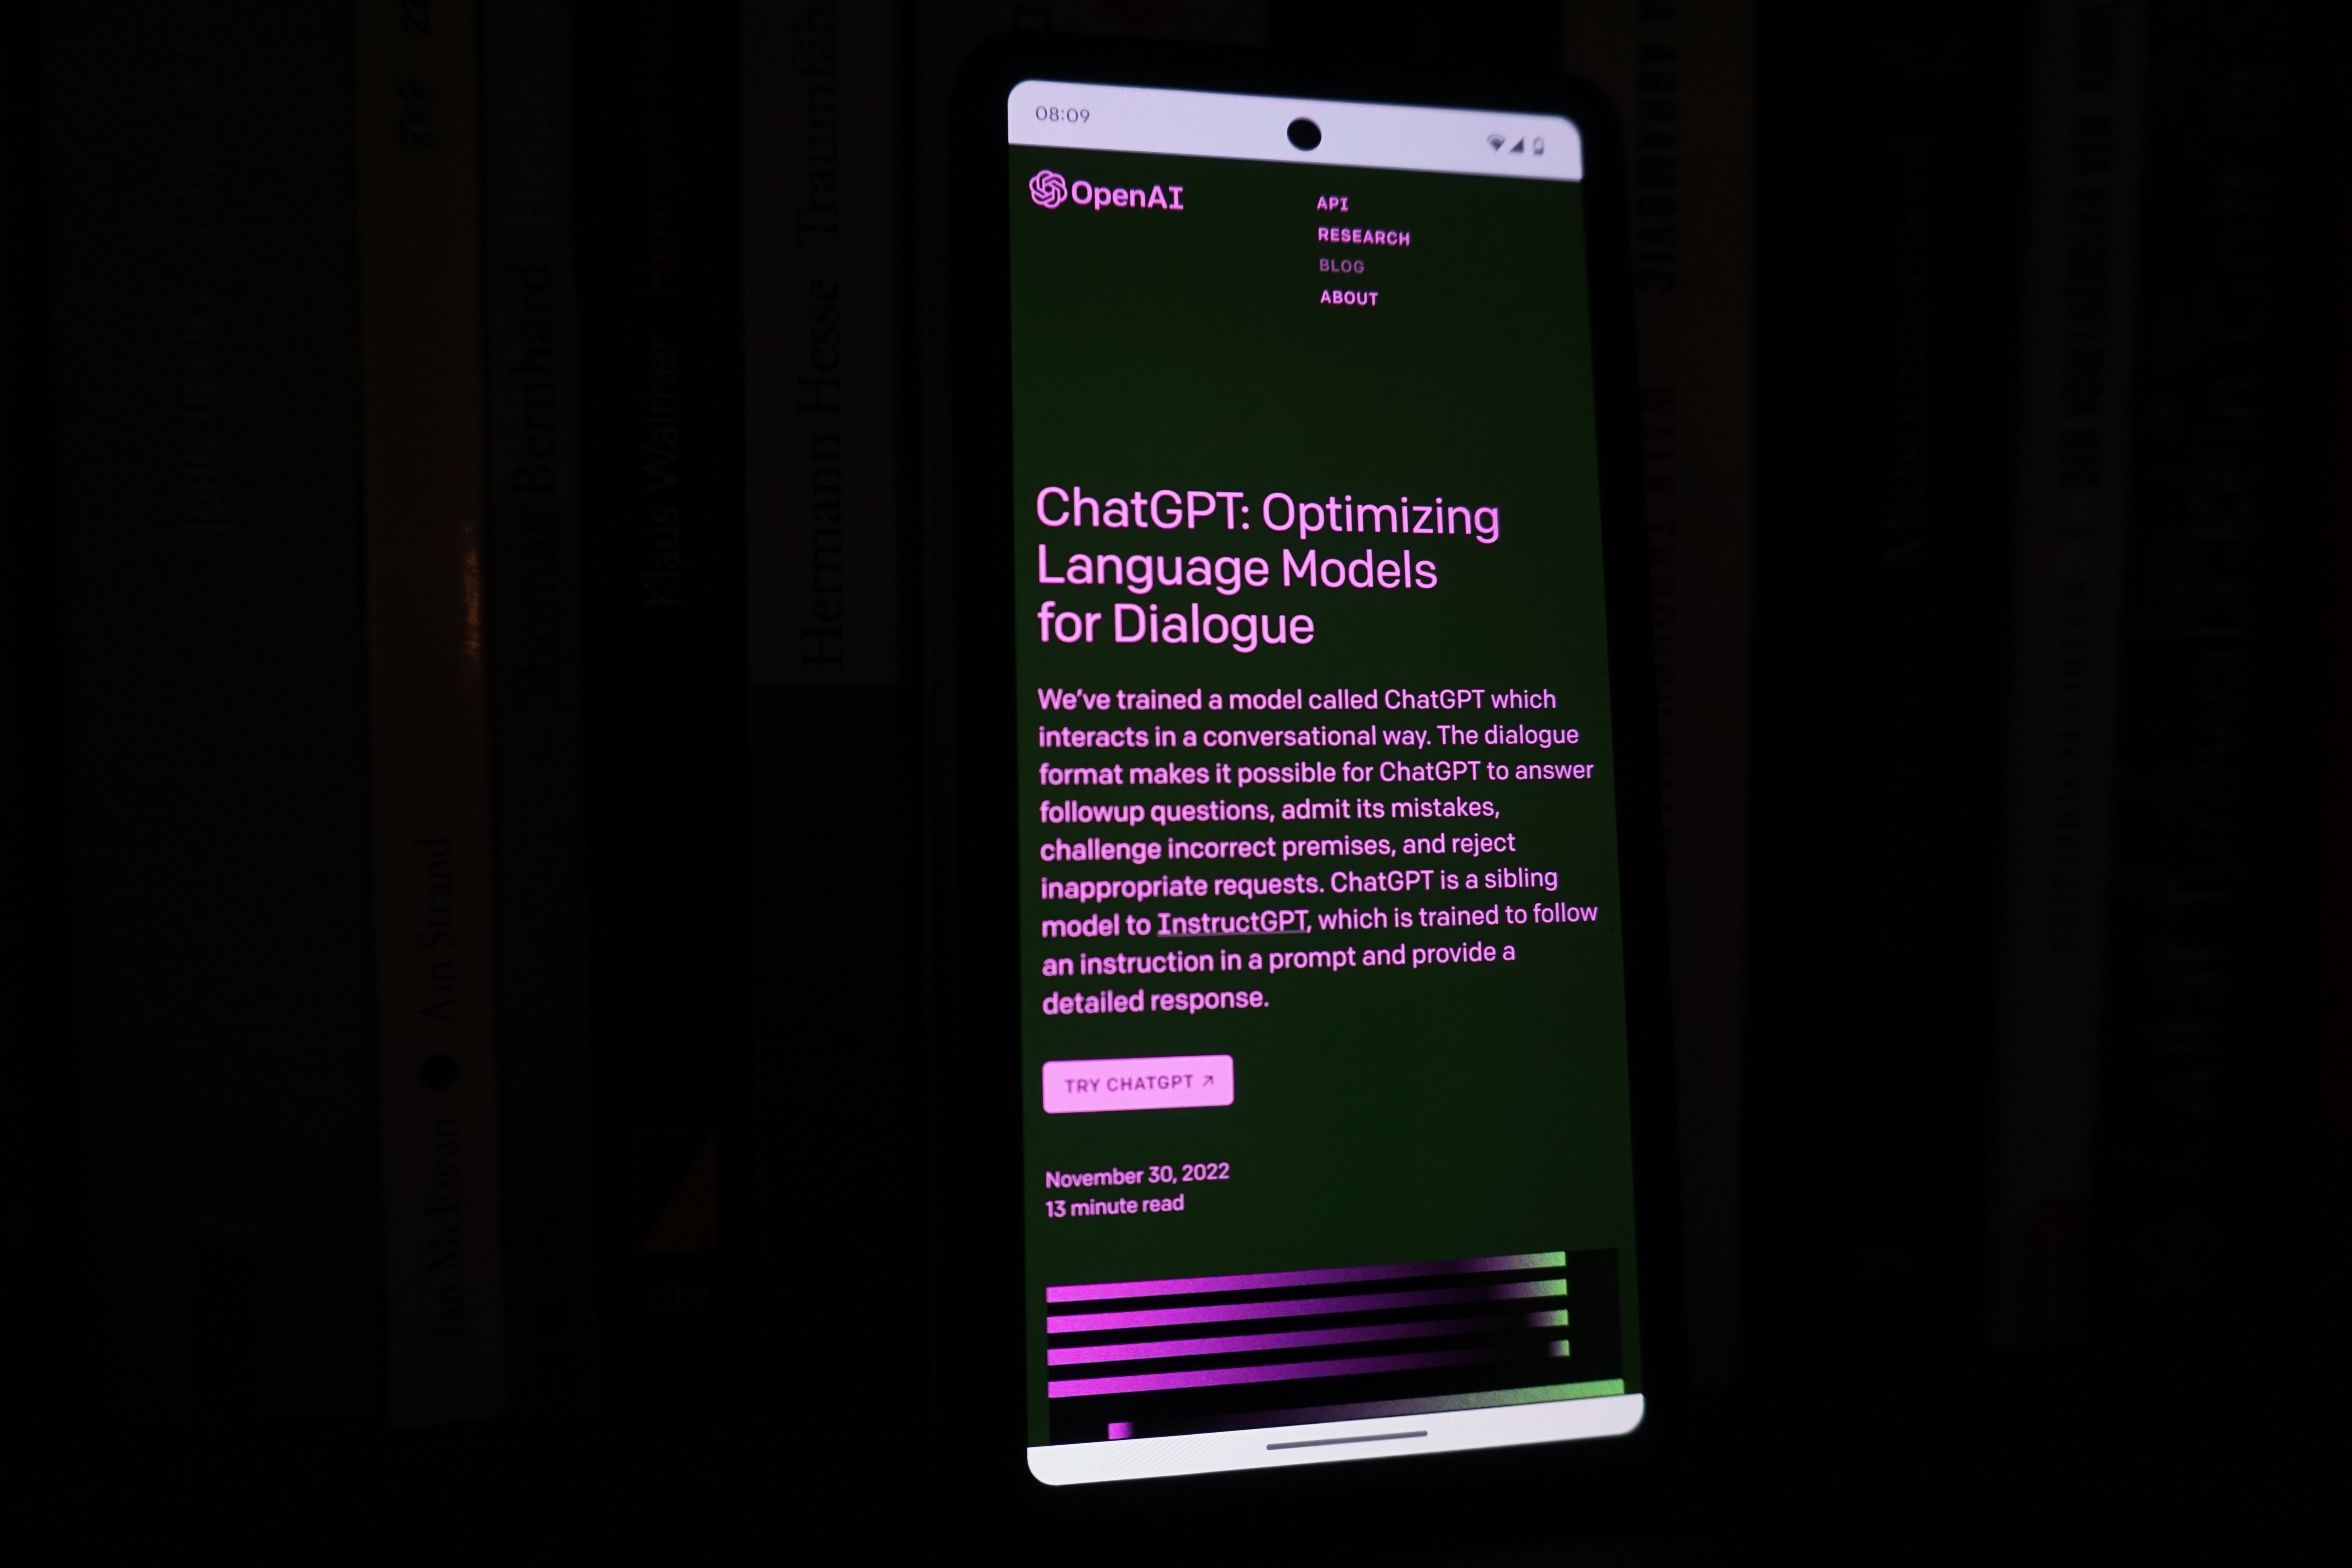 OpenAI udostępniło aplikację ChatGPT na Androida w ponad 160 krajach